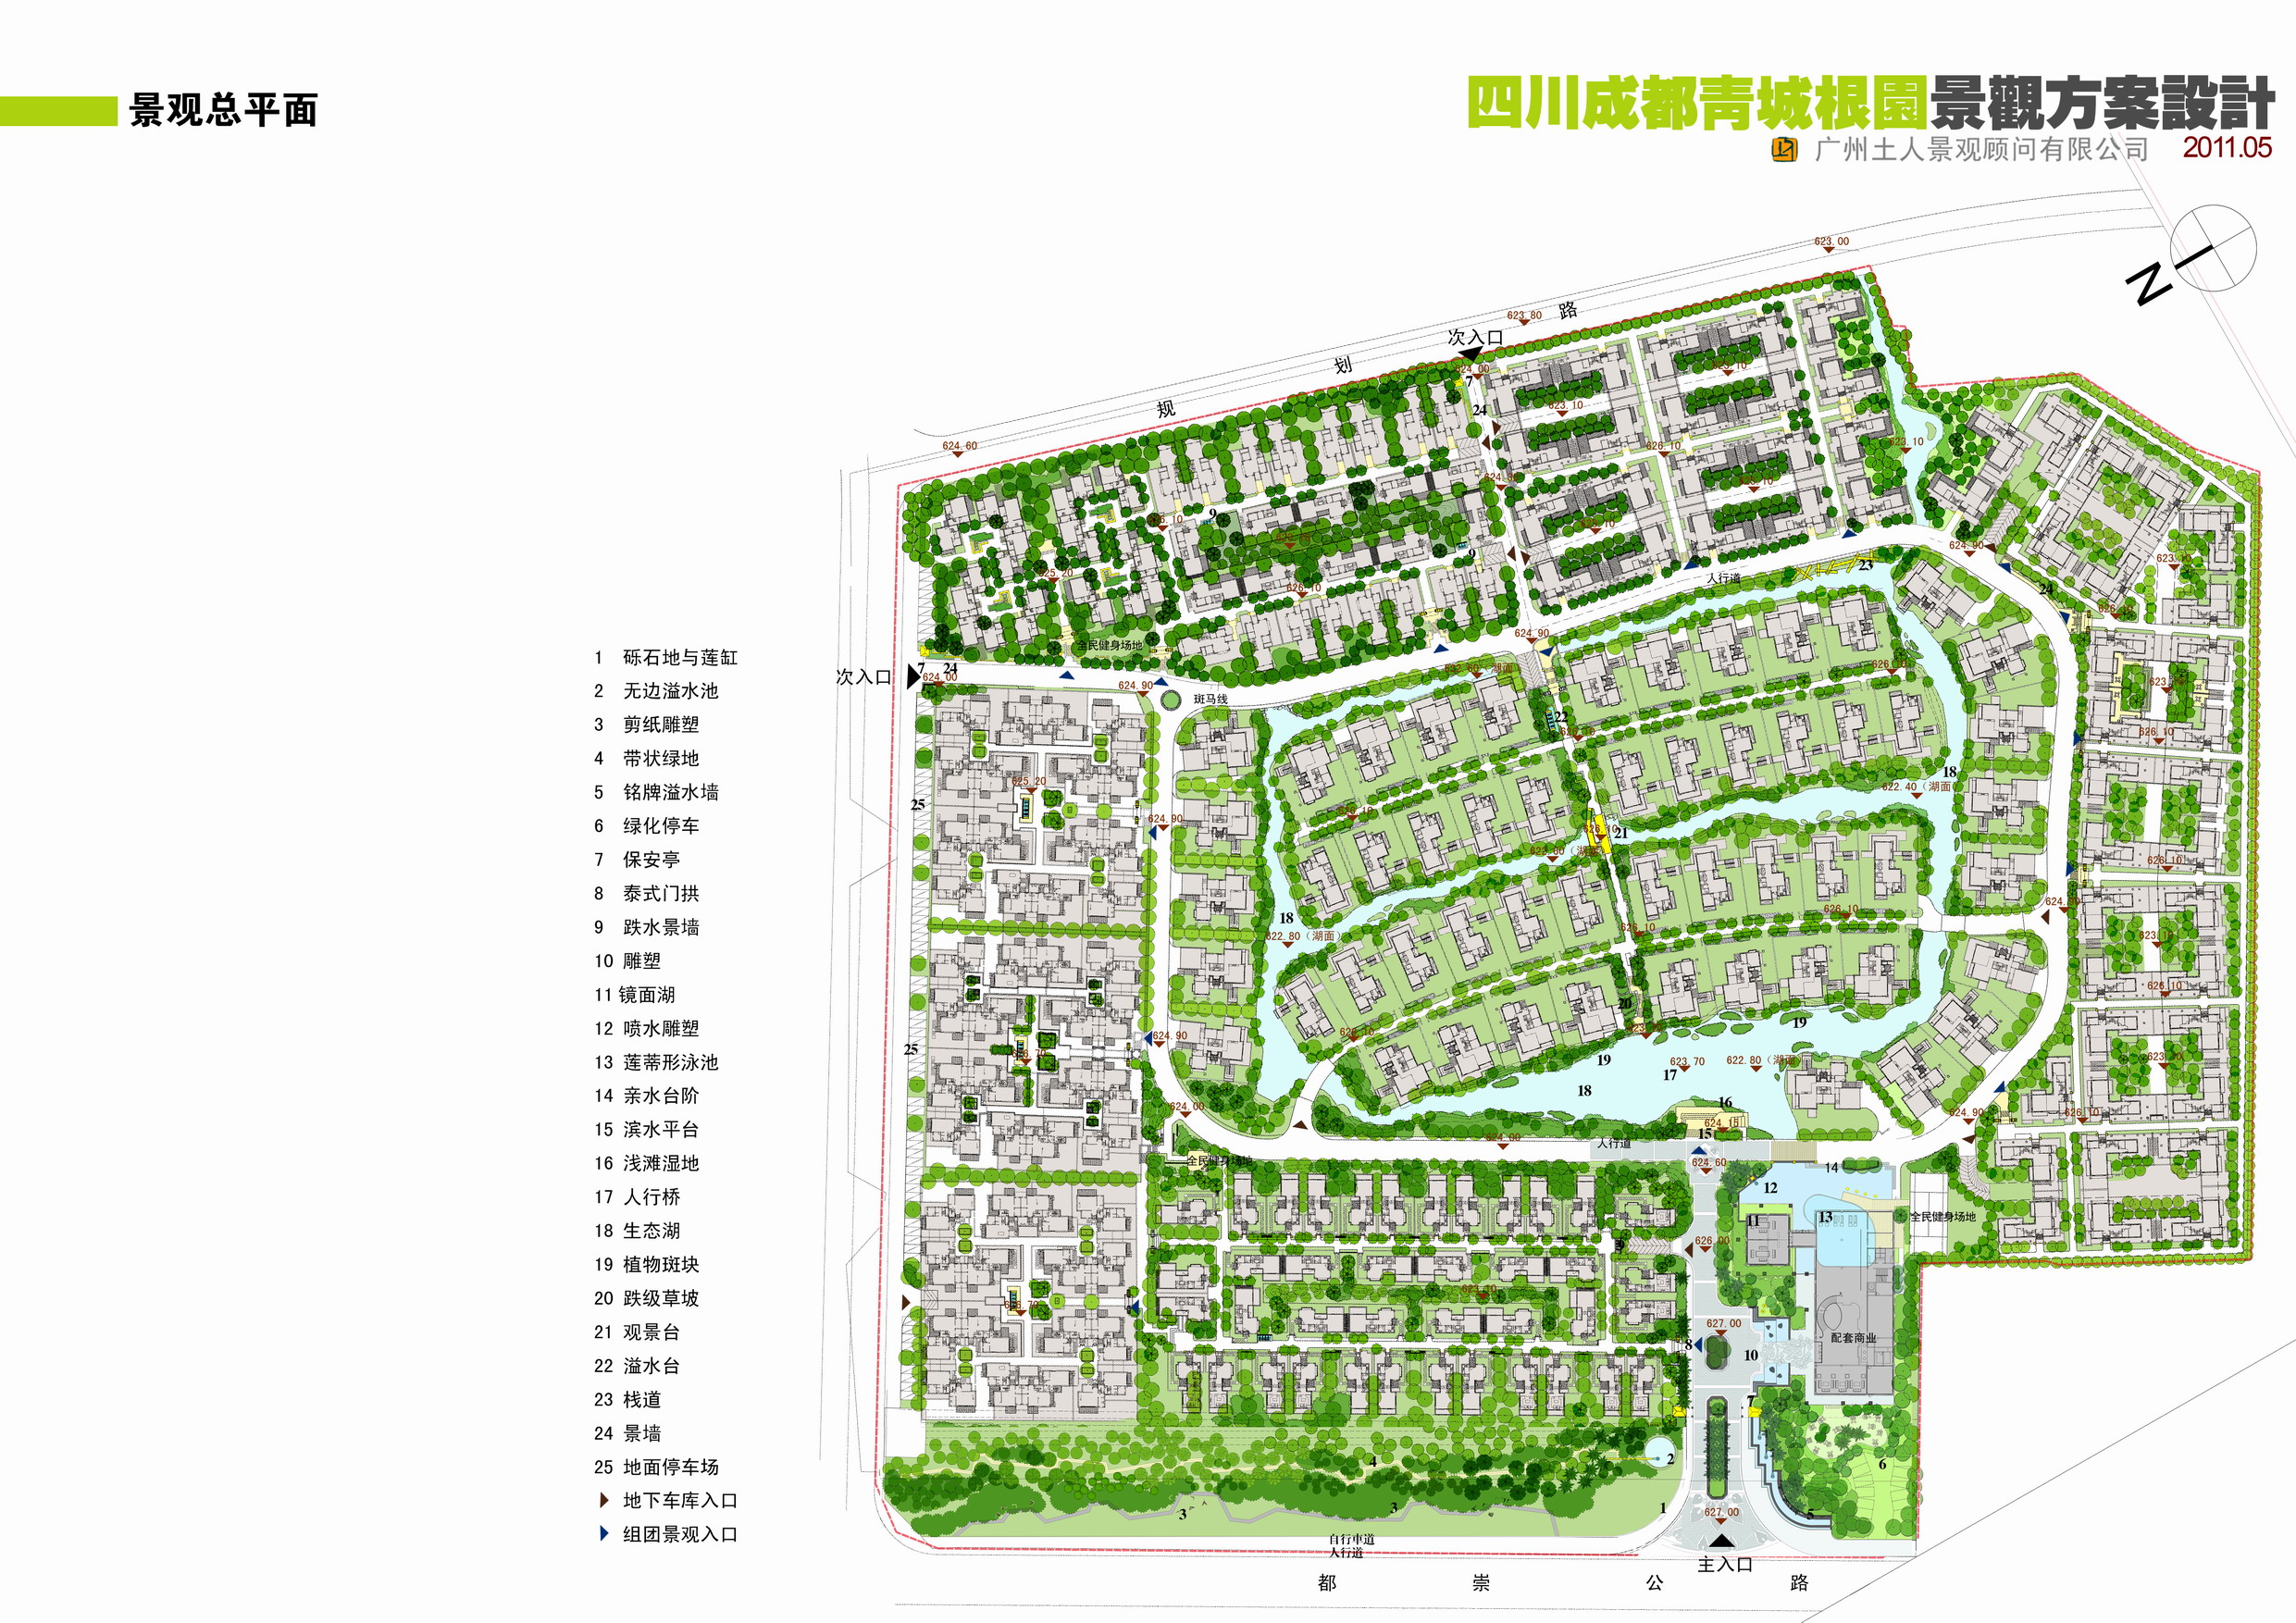 【成都】东南亚风情别墅区景观概念设计方案（jpg格式）